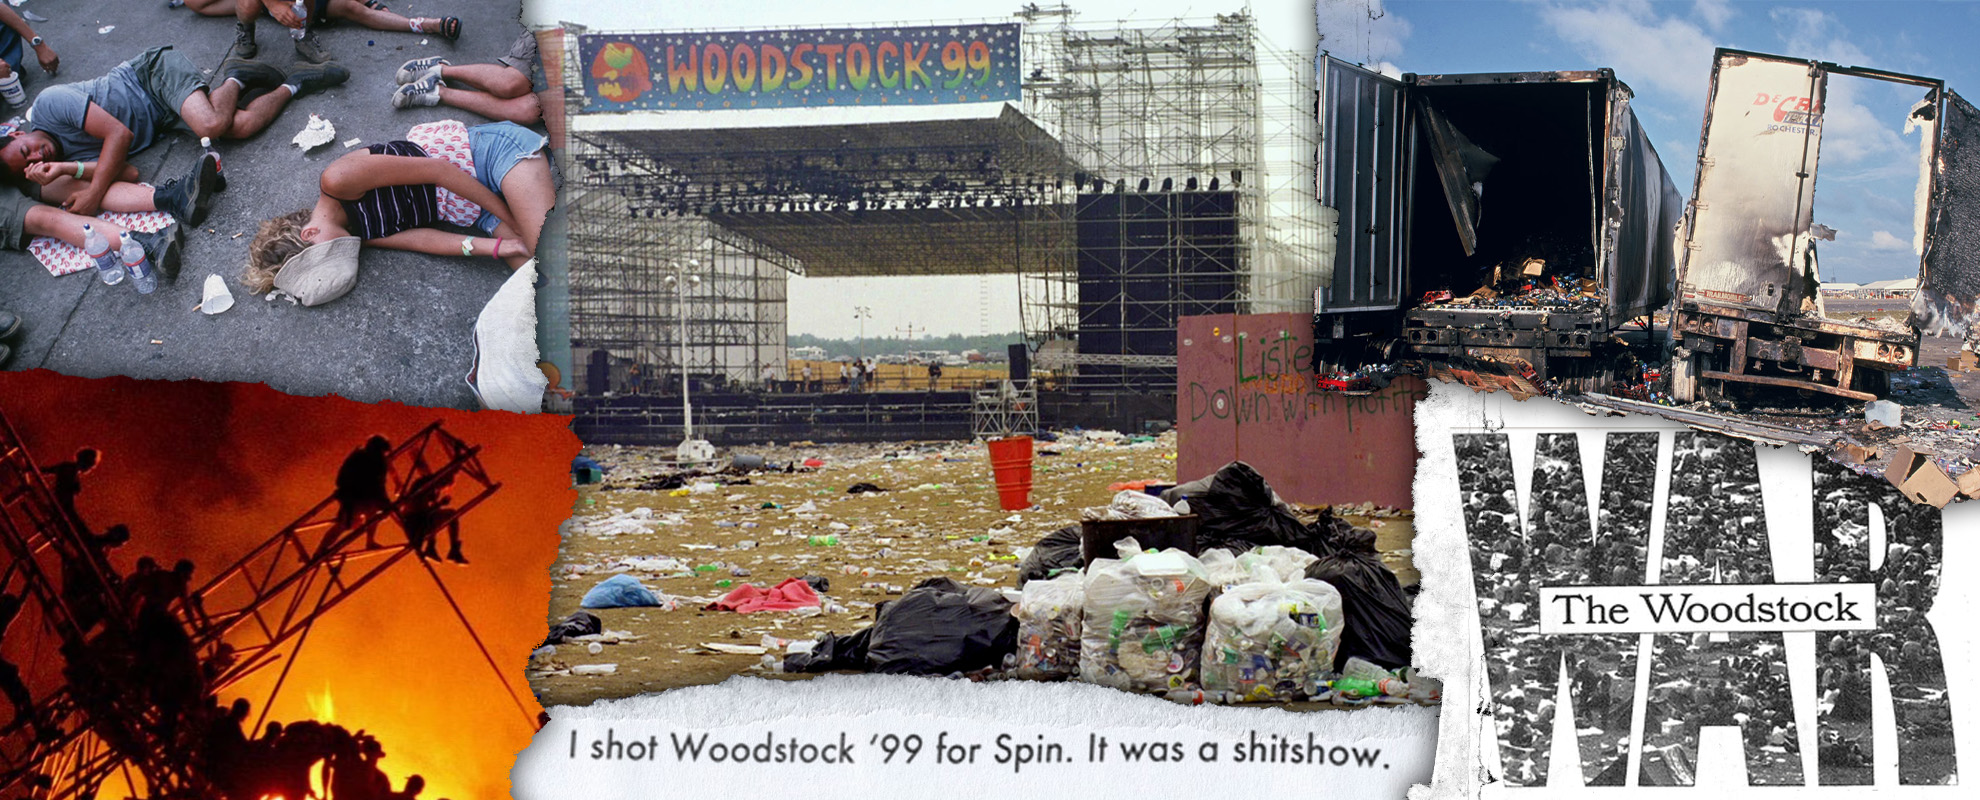 Woodstock '99, ou la fin d'un monde en mode chaos mercantile - Alworld.fr